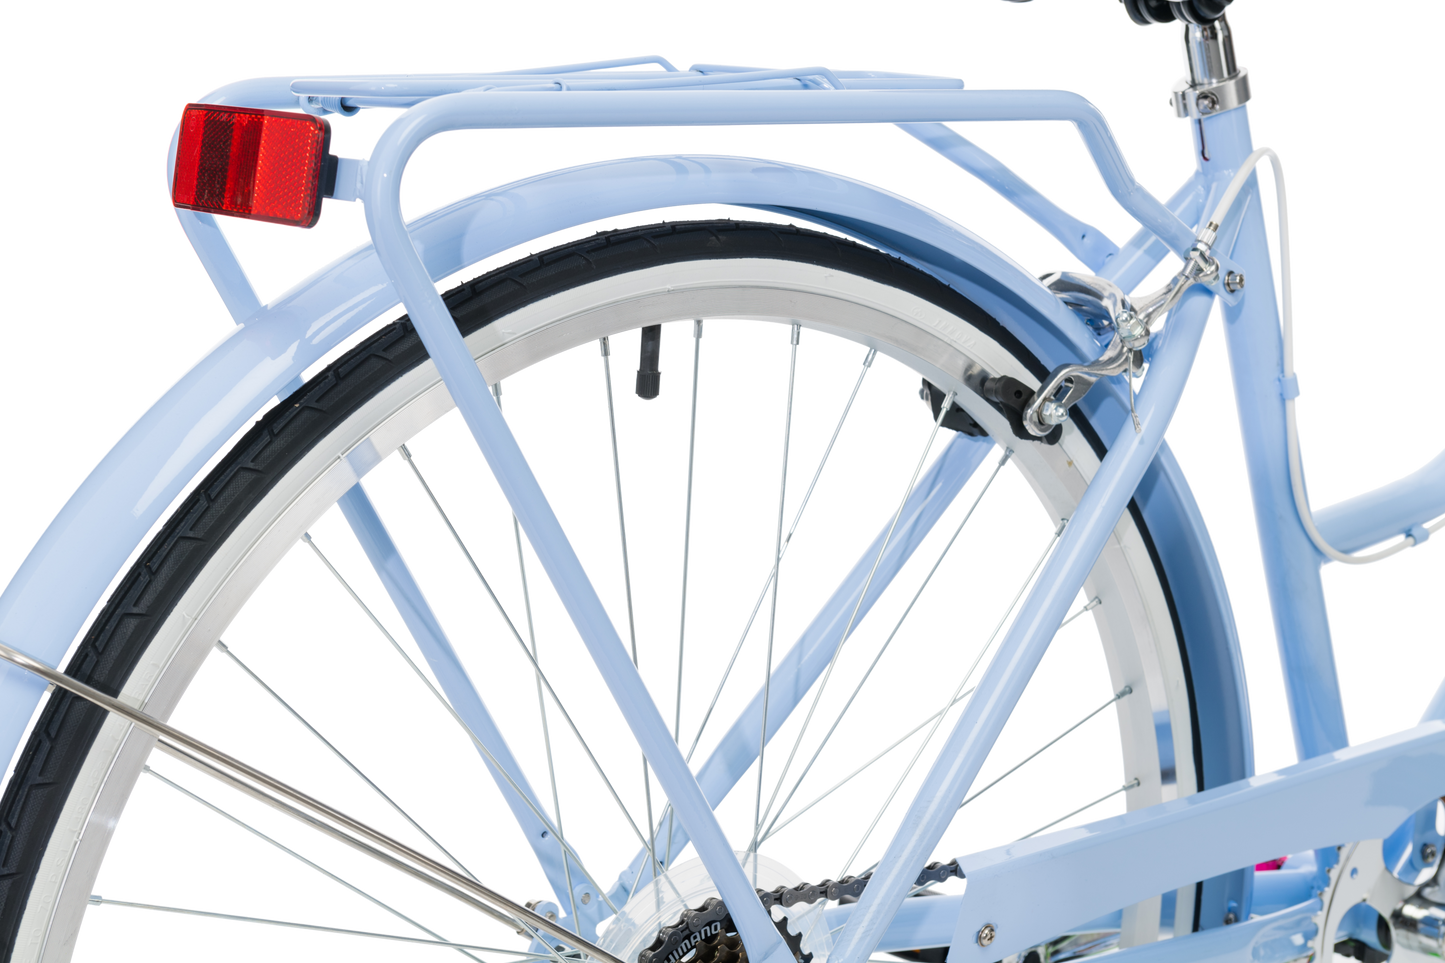 Ladies Classic Plus Vintage Bike in Sky Blue showing rear pannier rack from Reid Cycles Australia